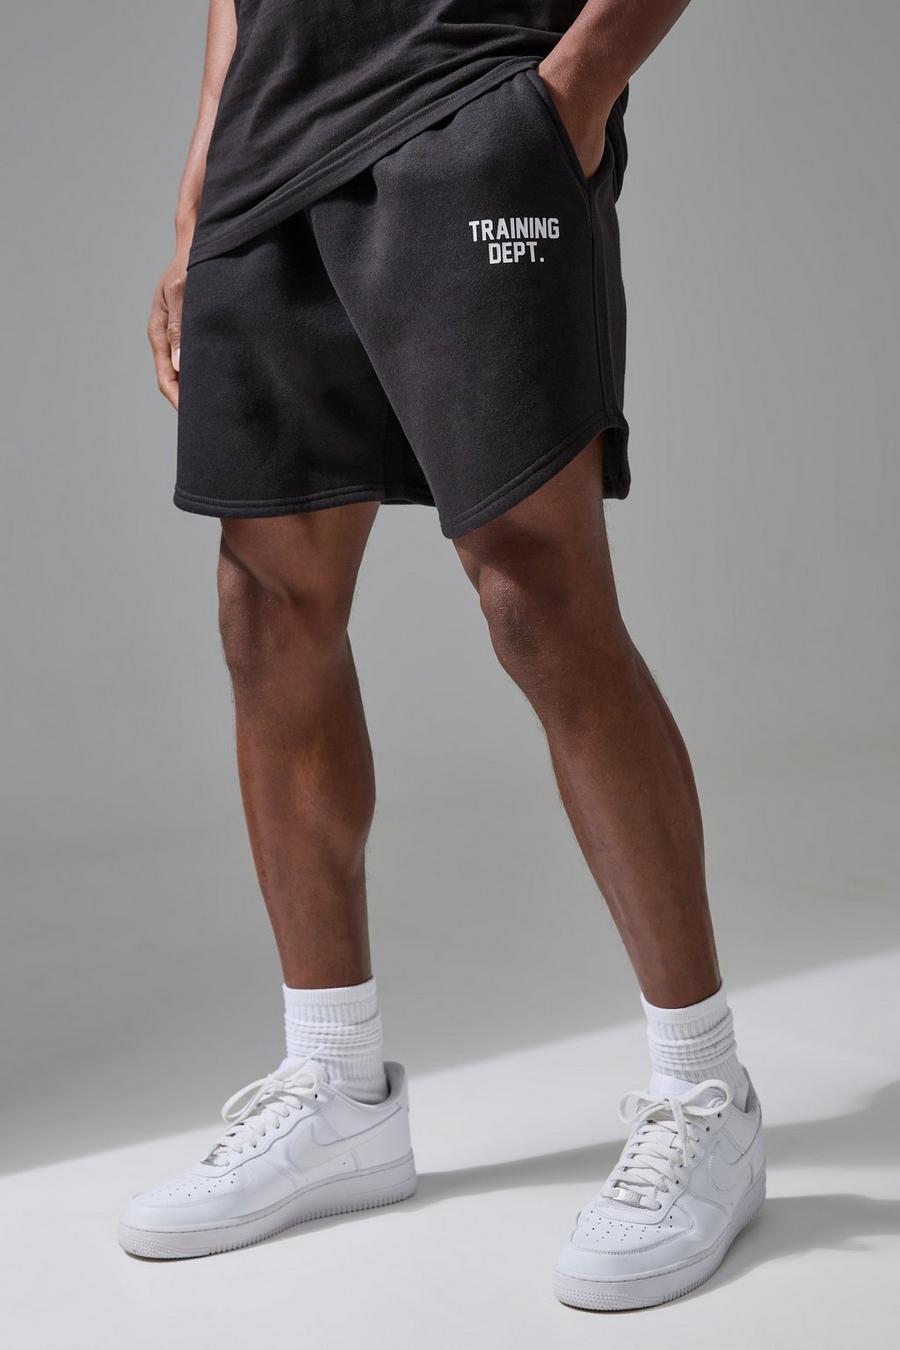 Pantalón corto MAN Active Training Dept de tela jersey y vóleibol, Black image number 1